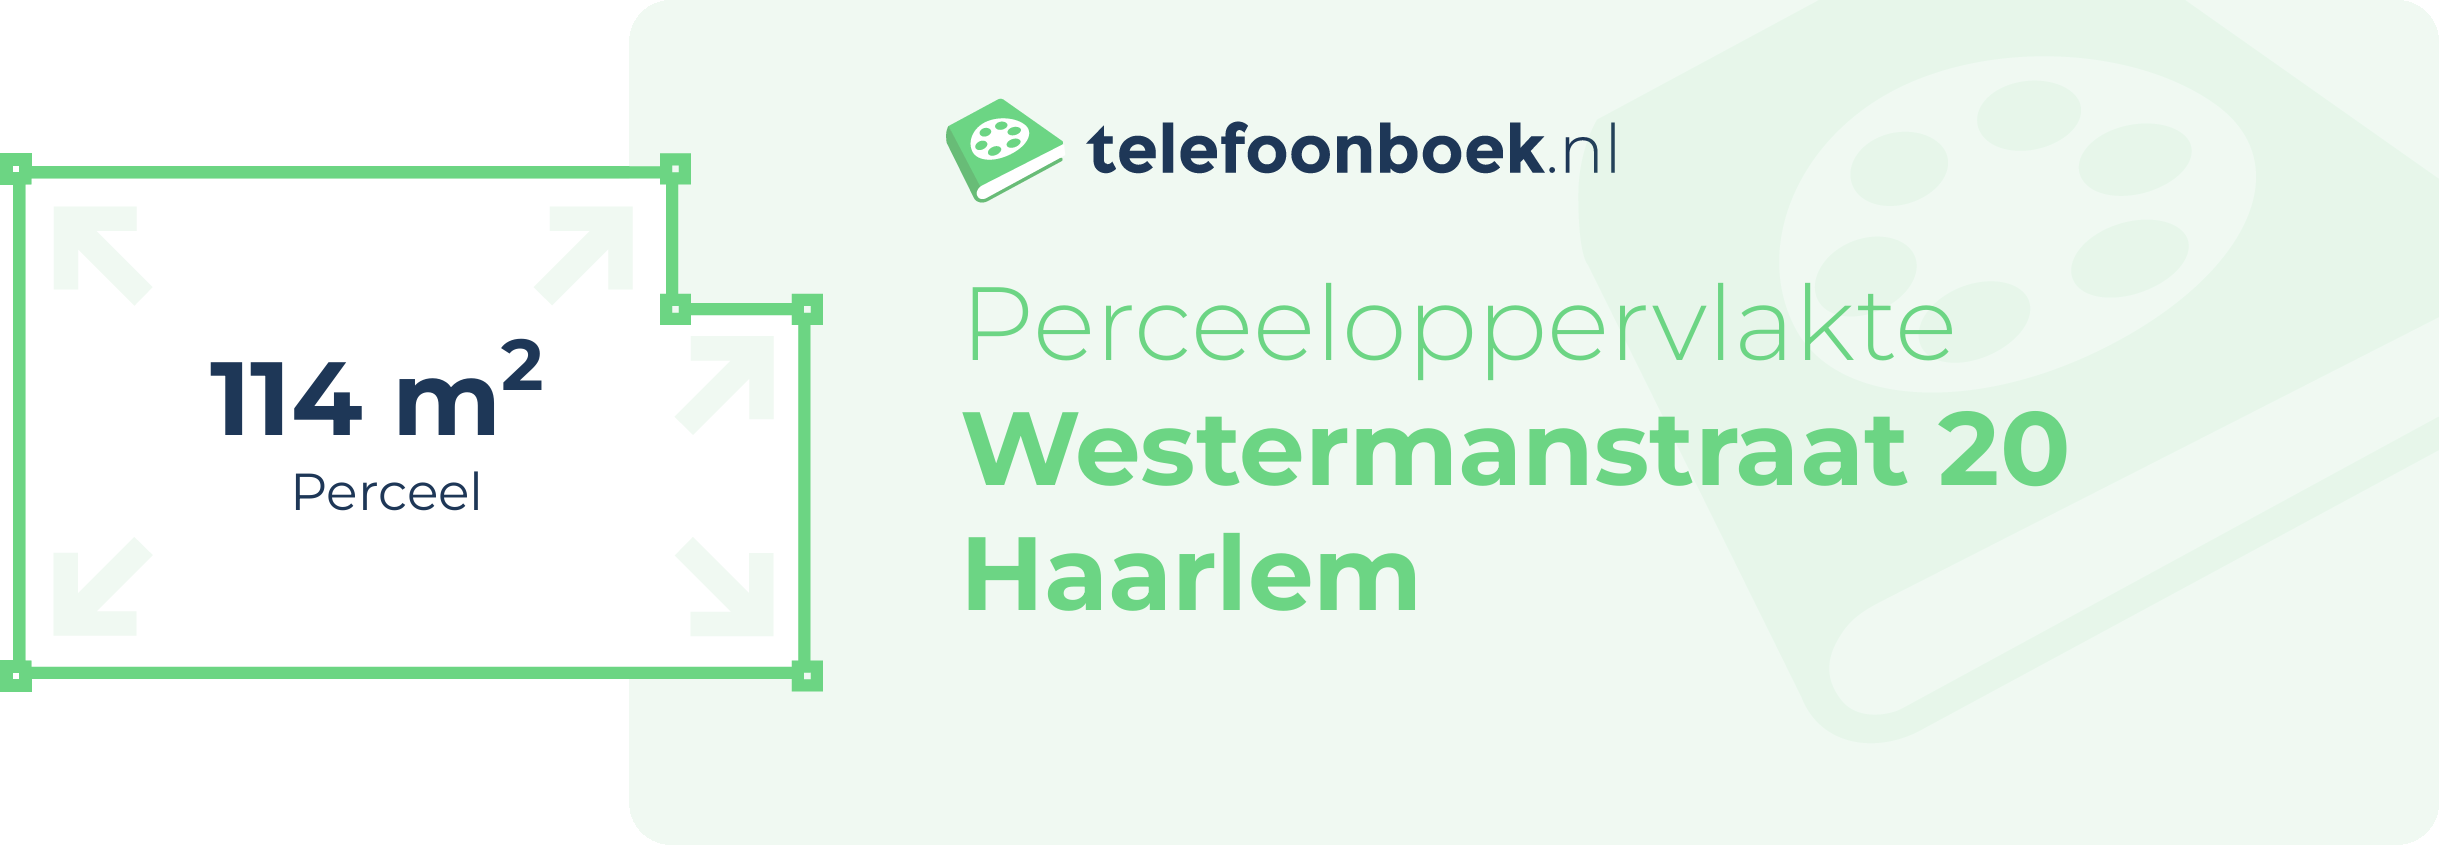 Perceeloppervlakte Westermanstraat 20 Haarlem